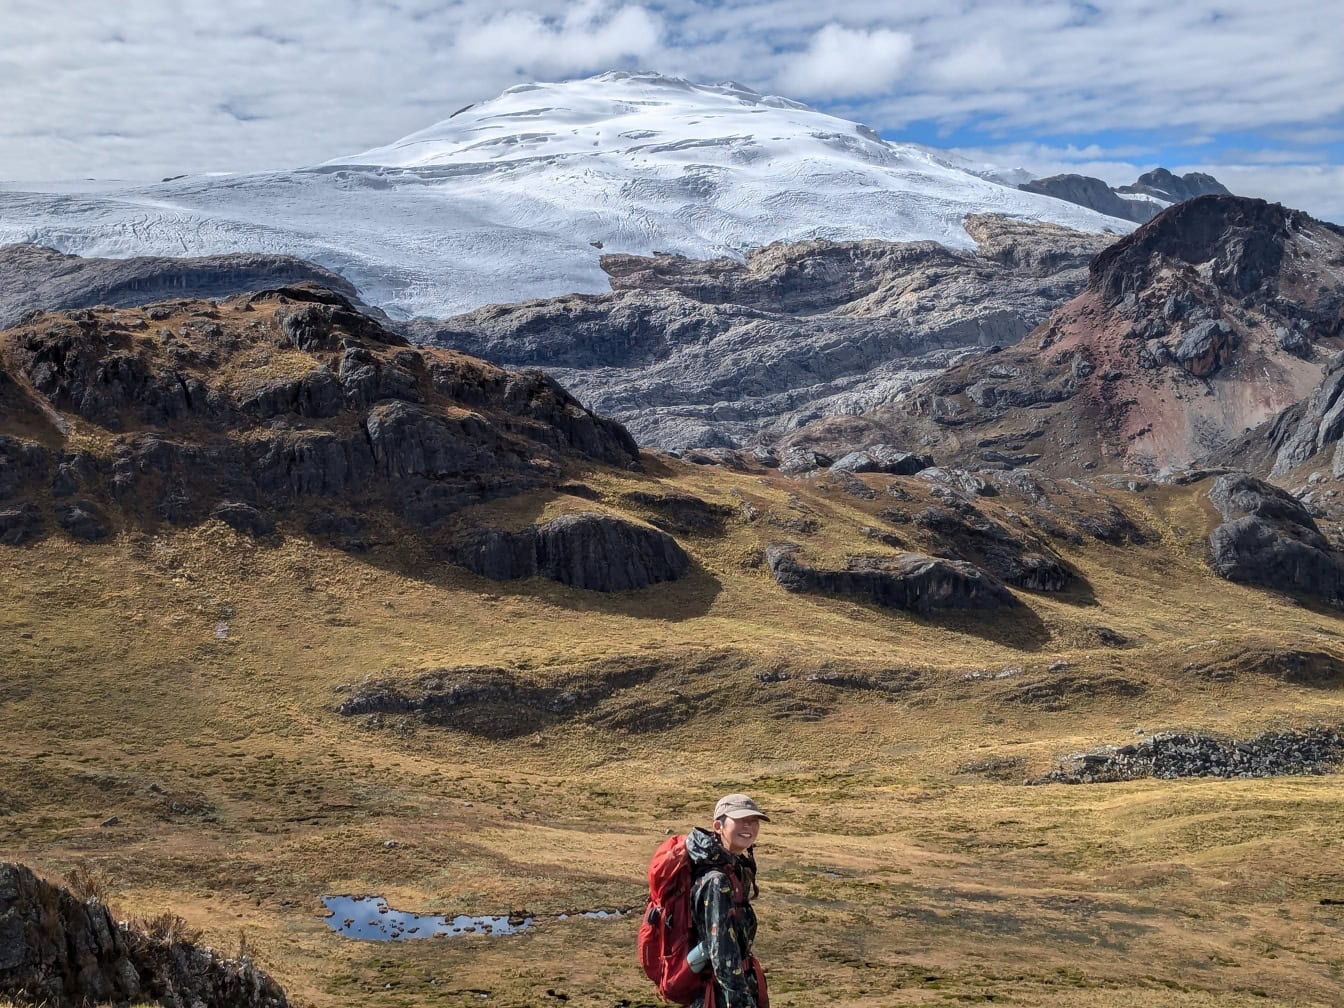 Pria Peru yang tersenyum mendaki di lapangan dengan gunung bersalju di latar belakang di Andes Peru